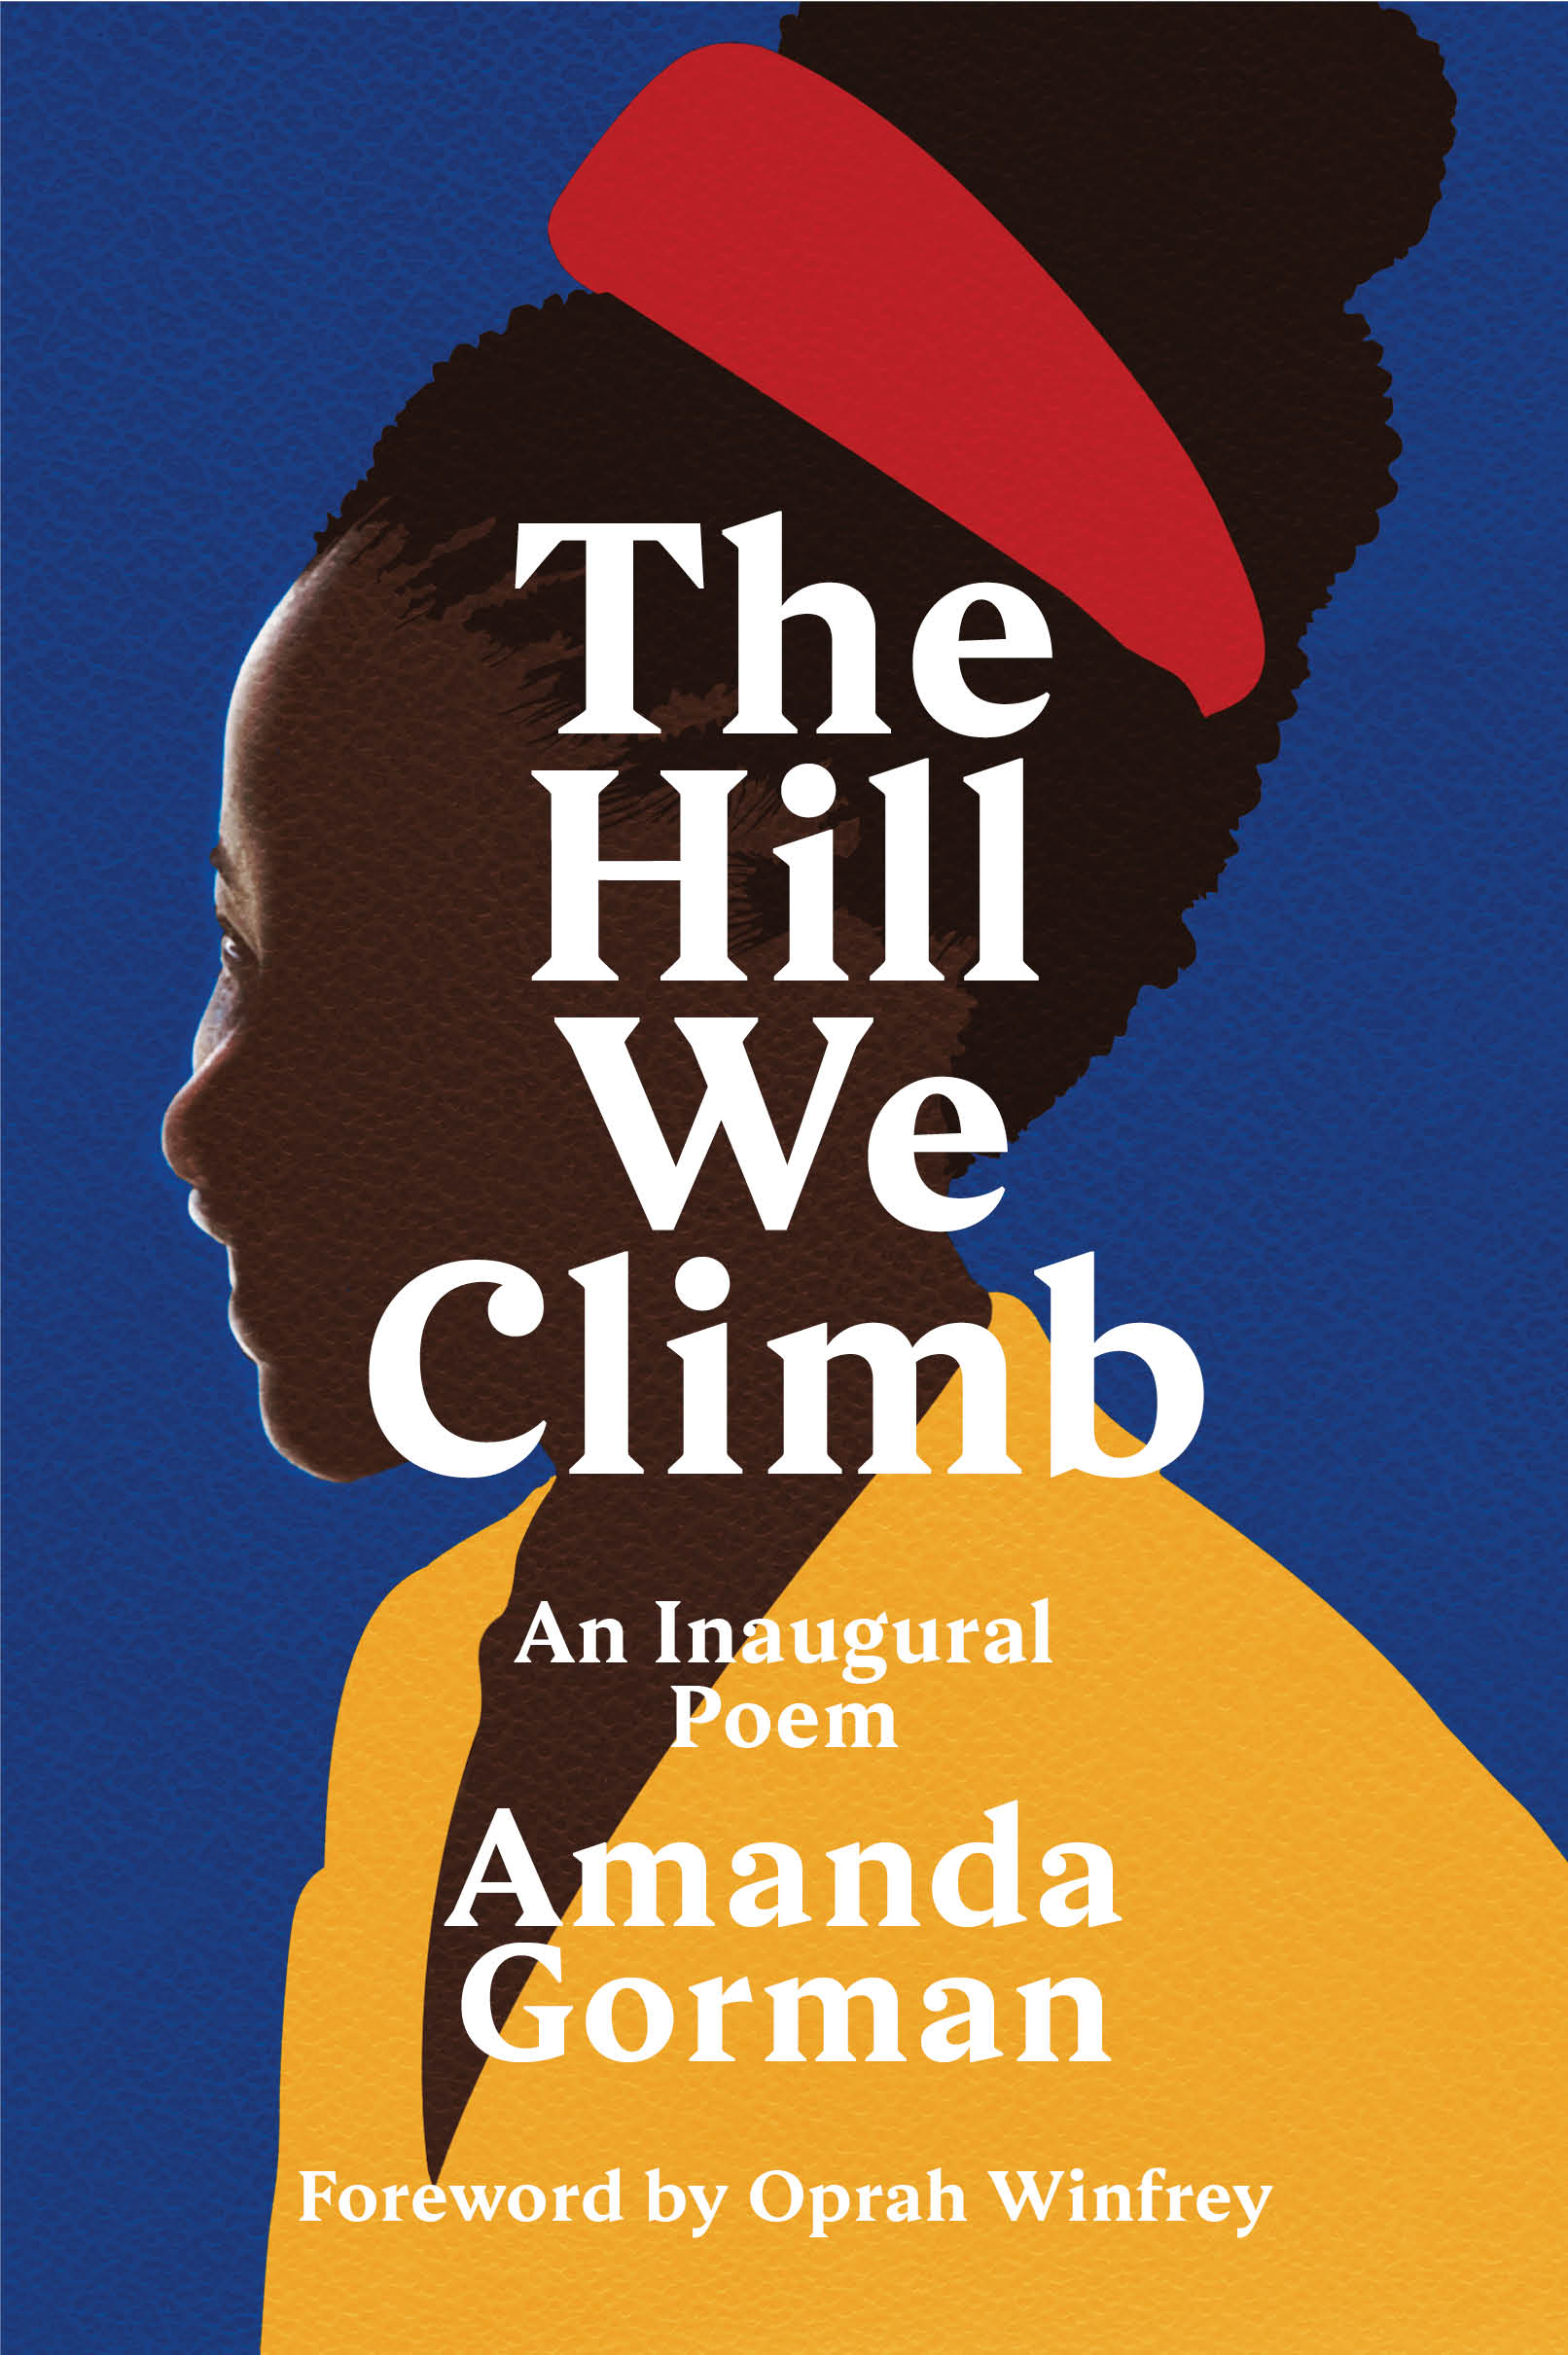 Tentang ‘The Hill We Climb’ dan Culture Global Amerika yang Tak Terbatas